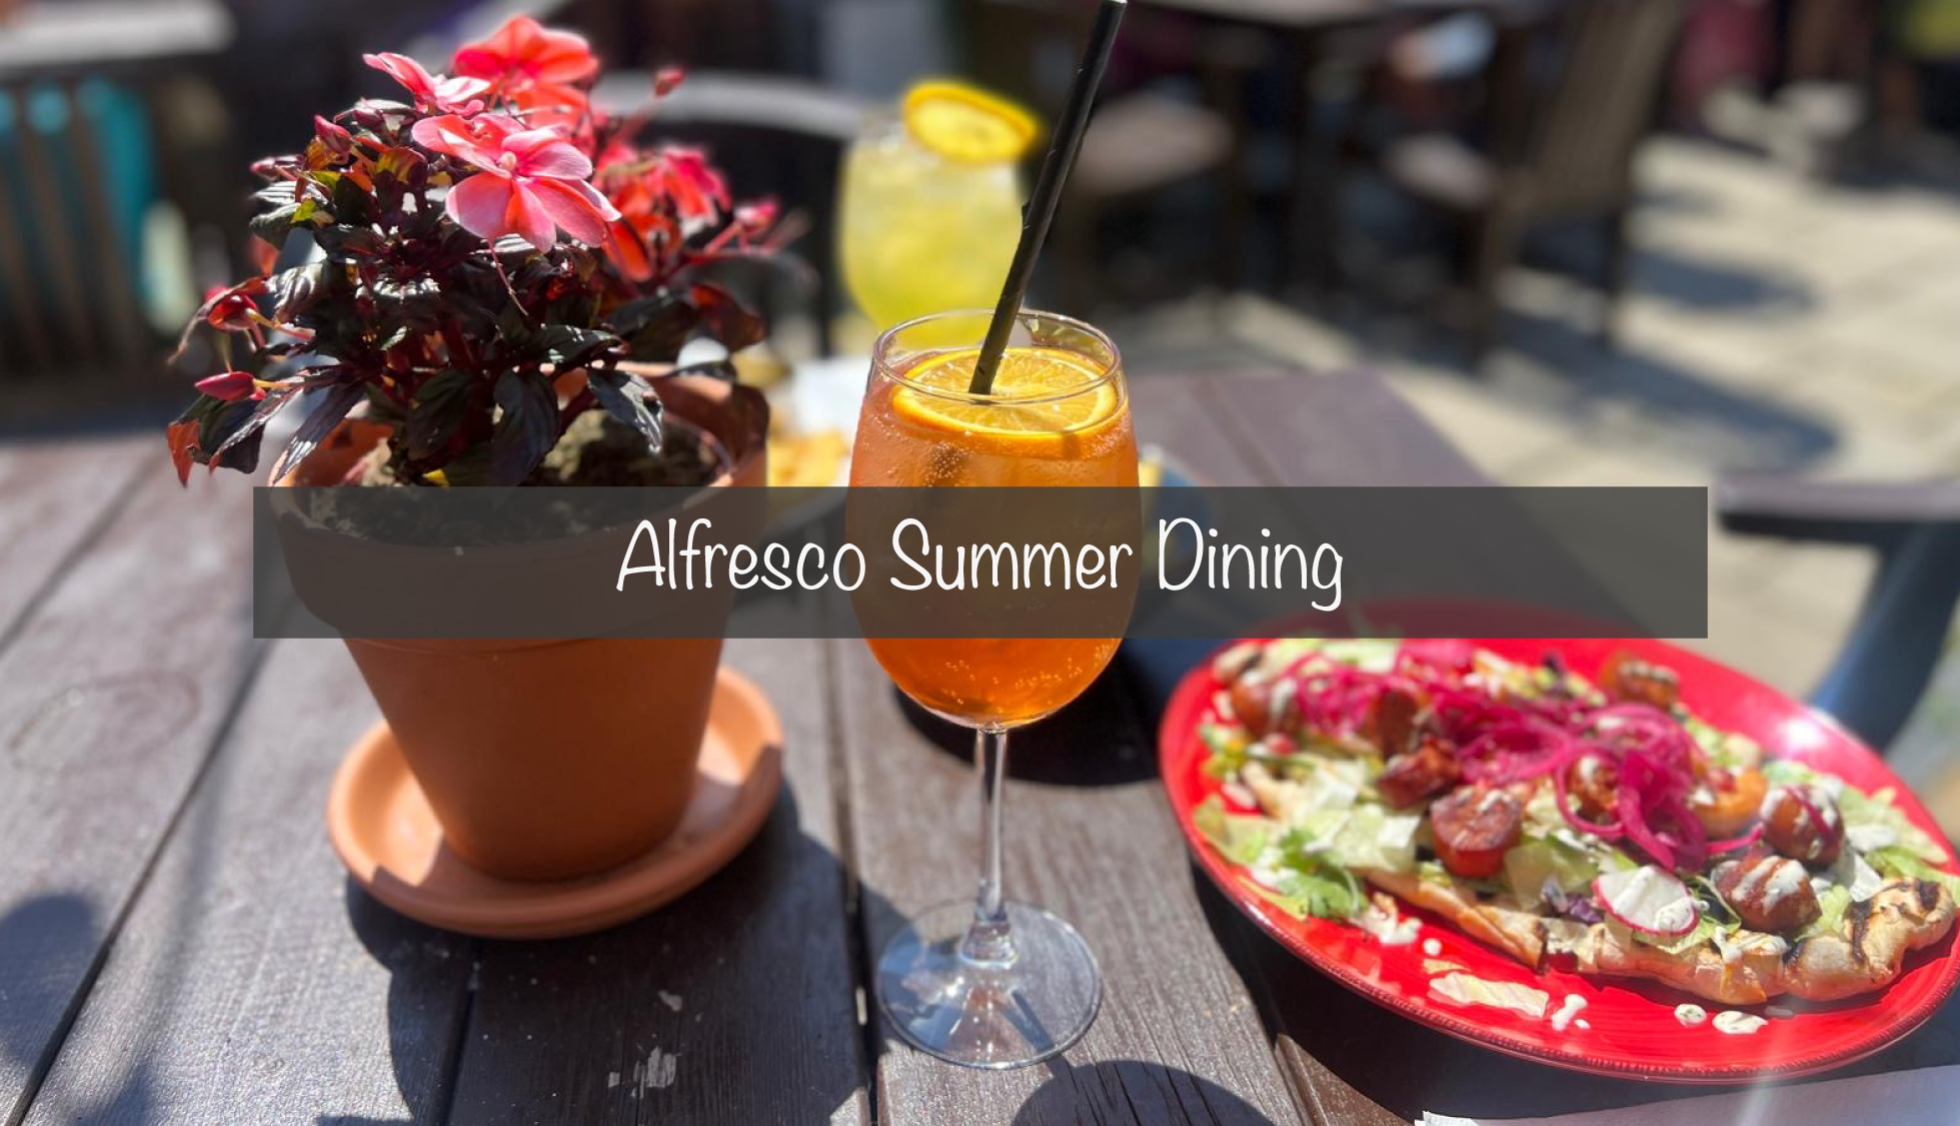 Alfresco Summer Dining